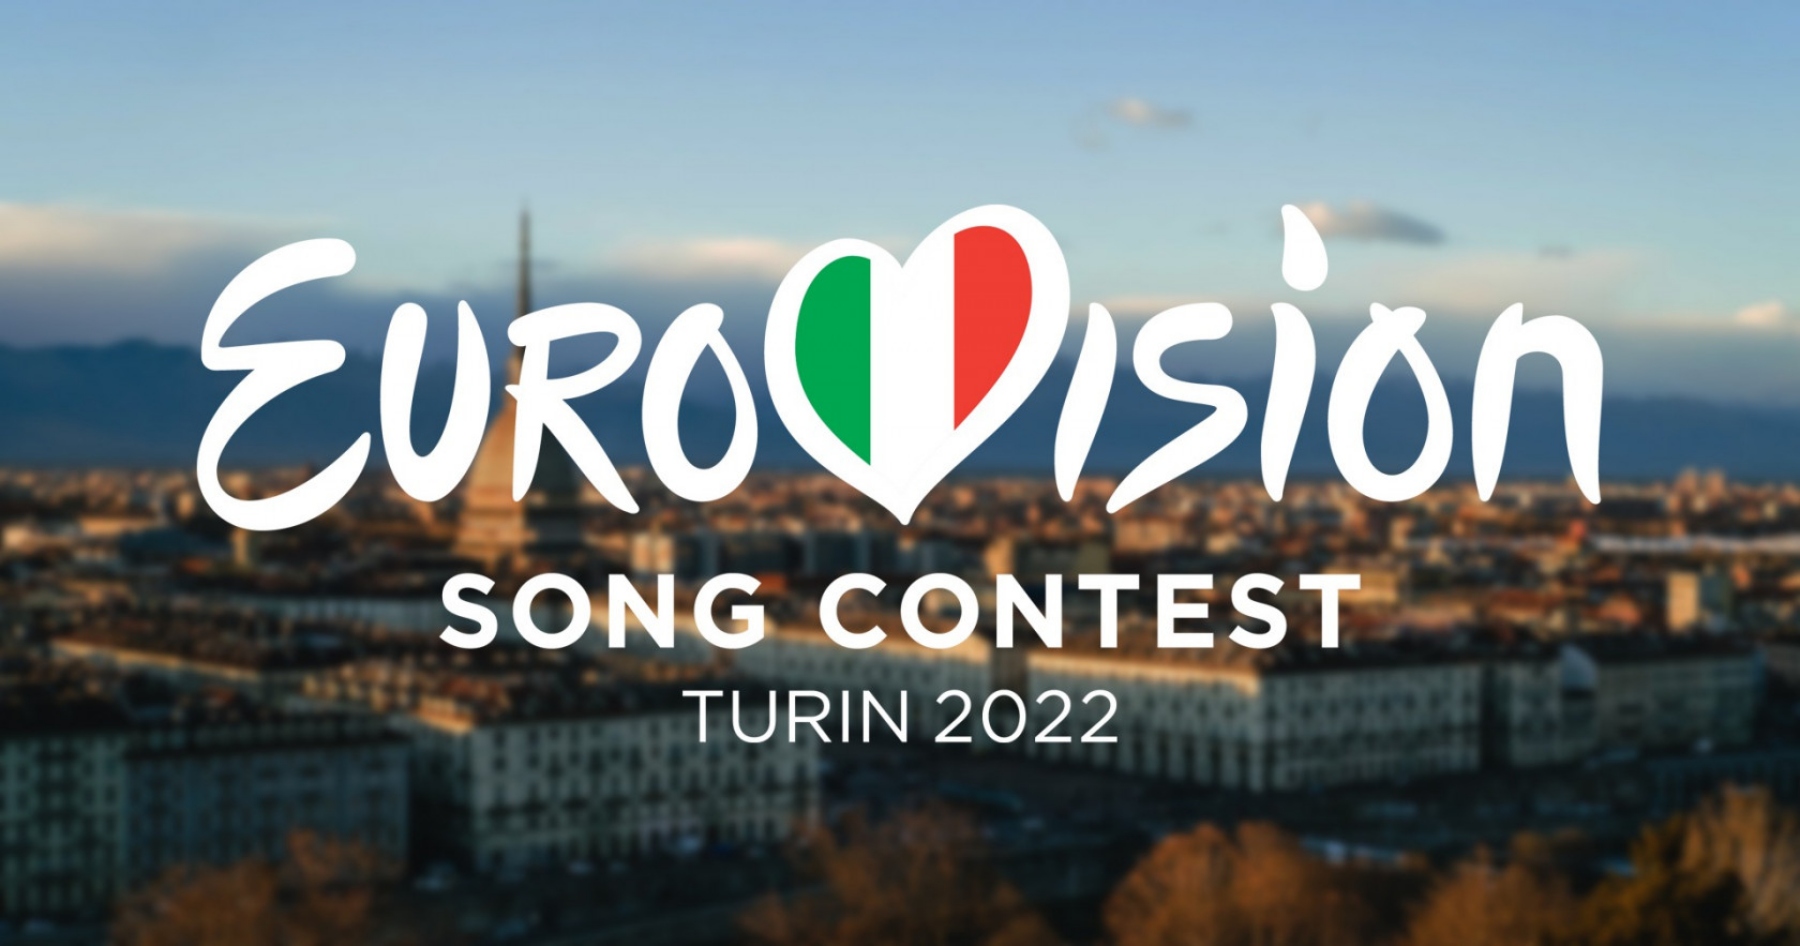 Concours Eurovision de la chanson 2022 : Comment obtenir des billets